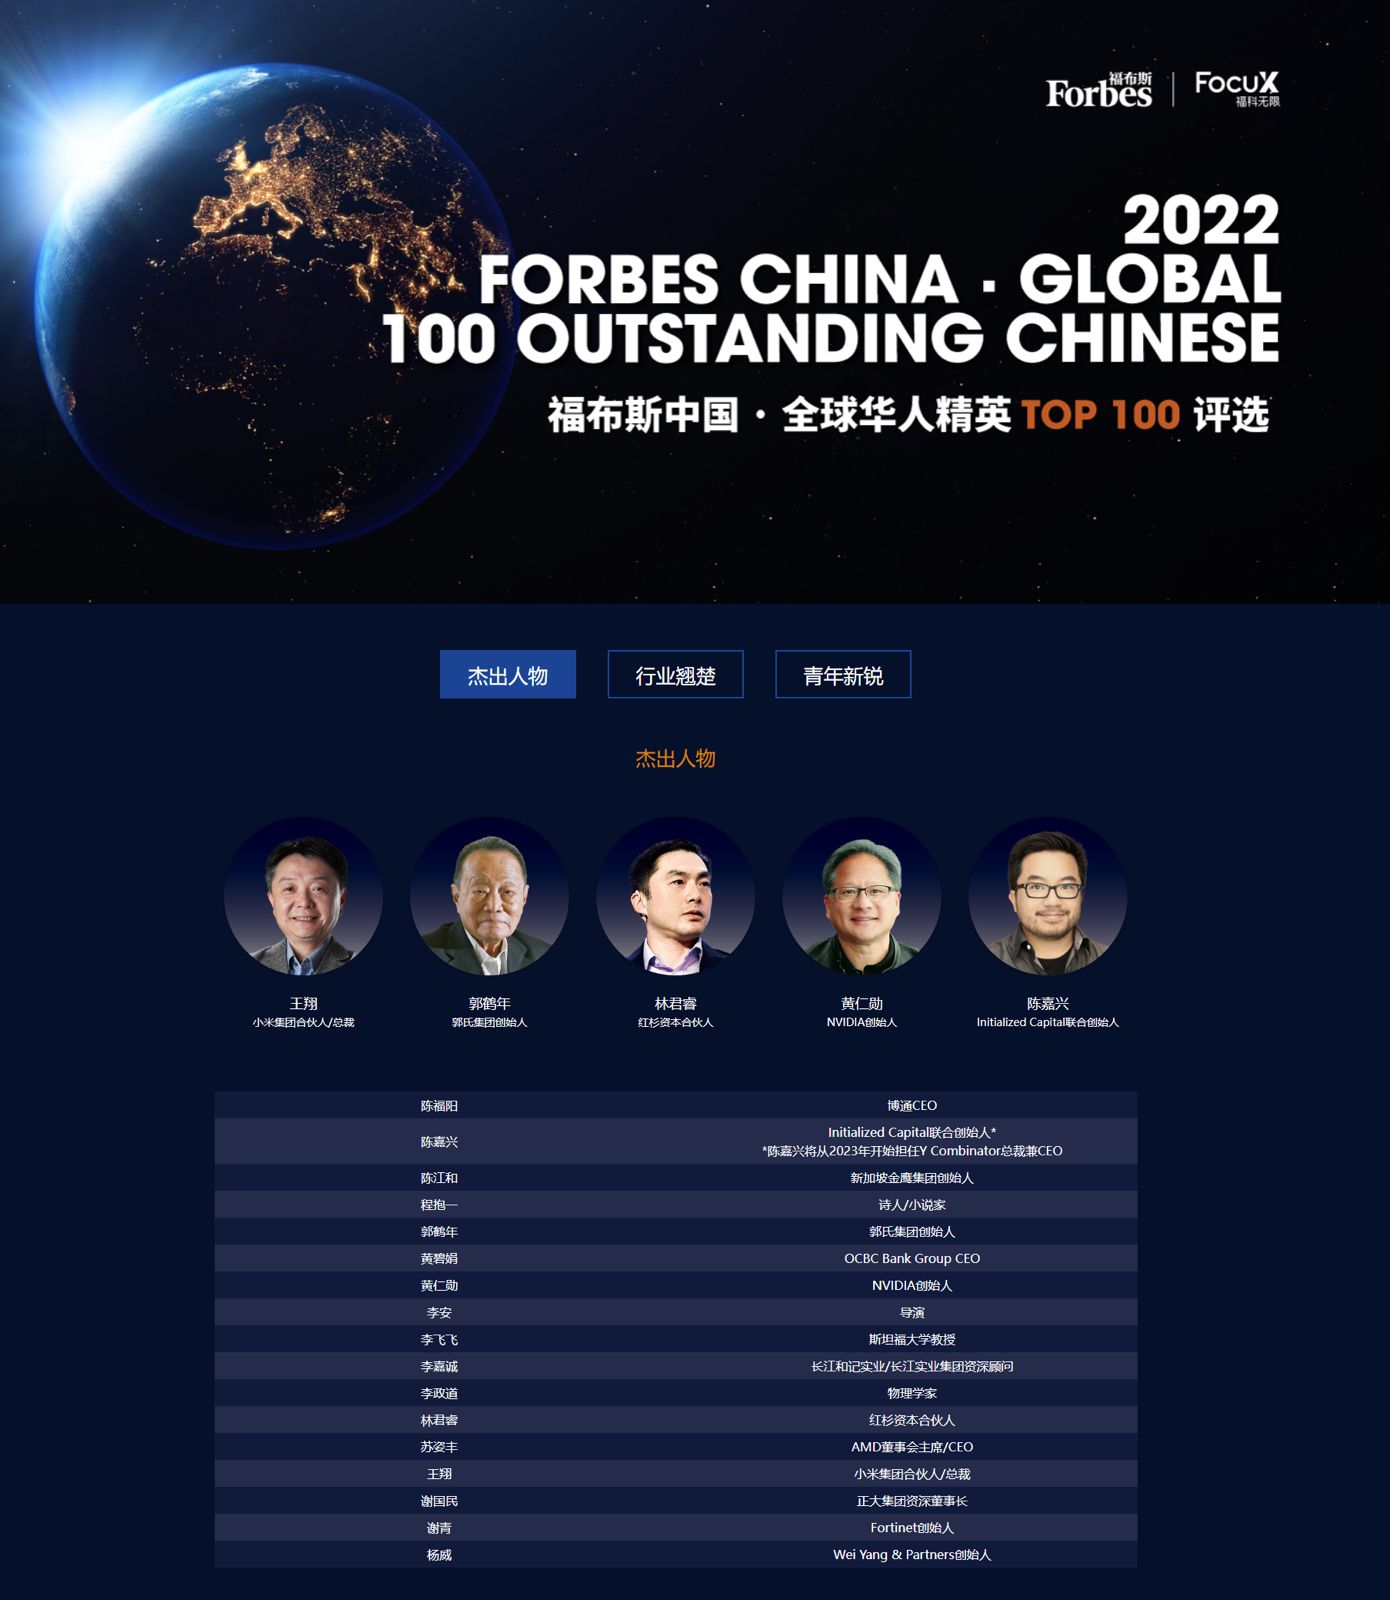 Президент Xiaomi Group попал в список «Выдающихся людей» Forbes 